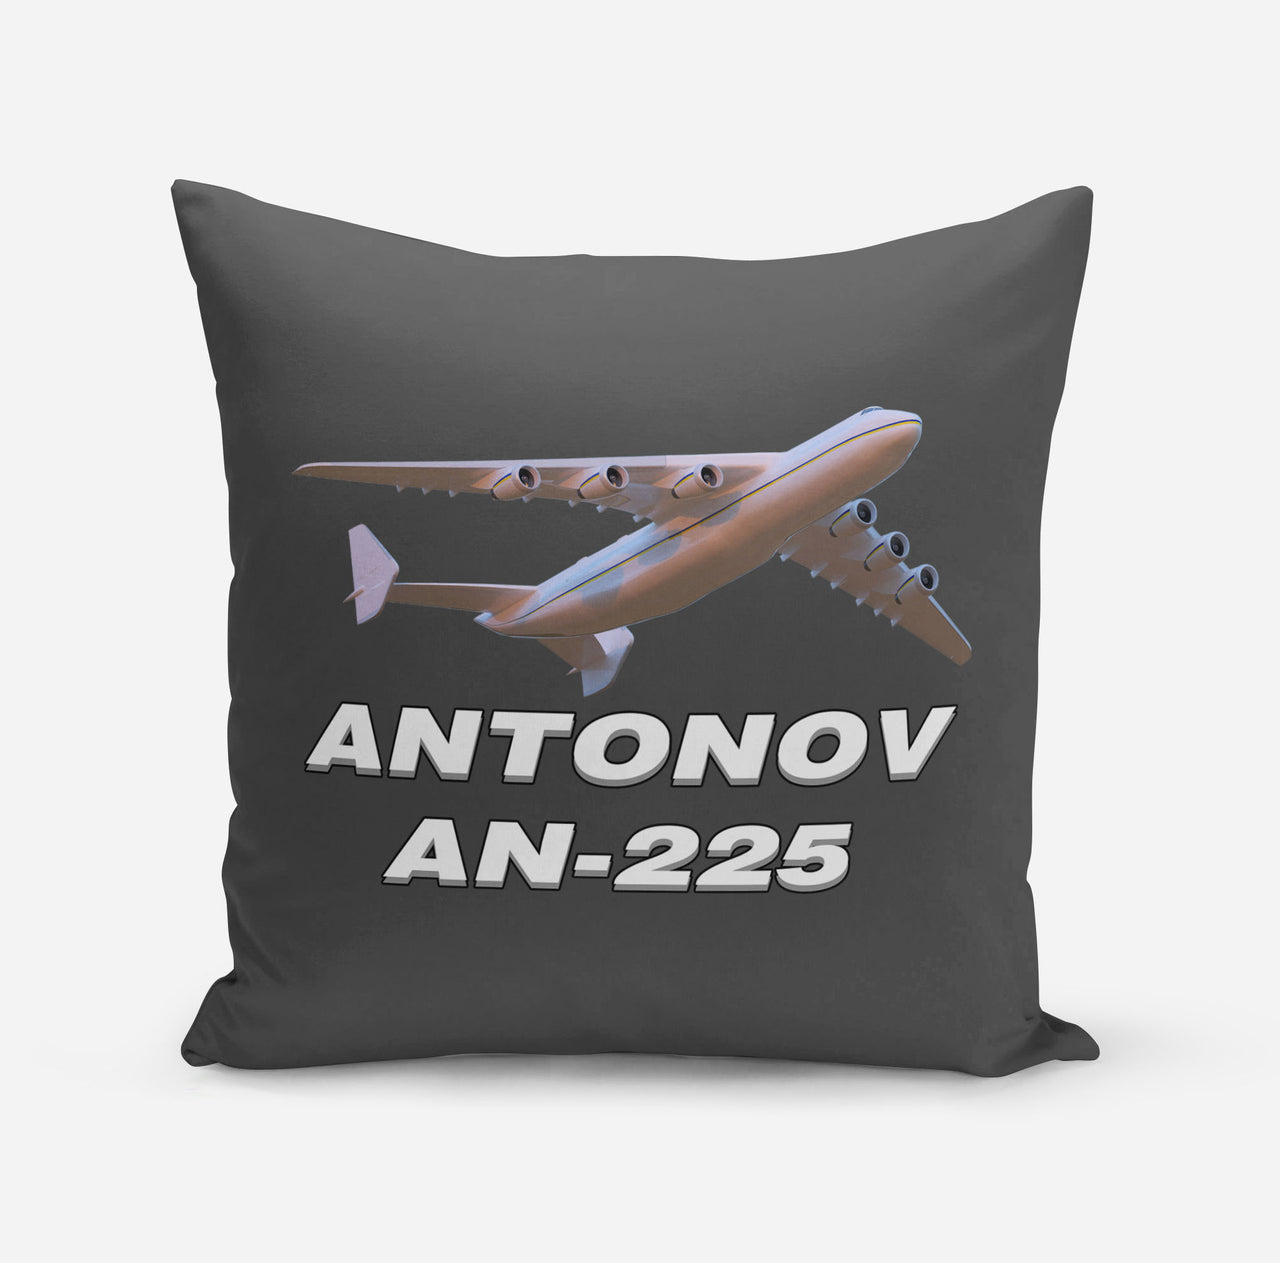 Antonov AN-225 (3) Designed Pillows